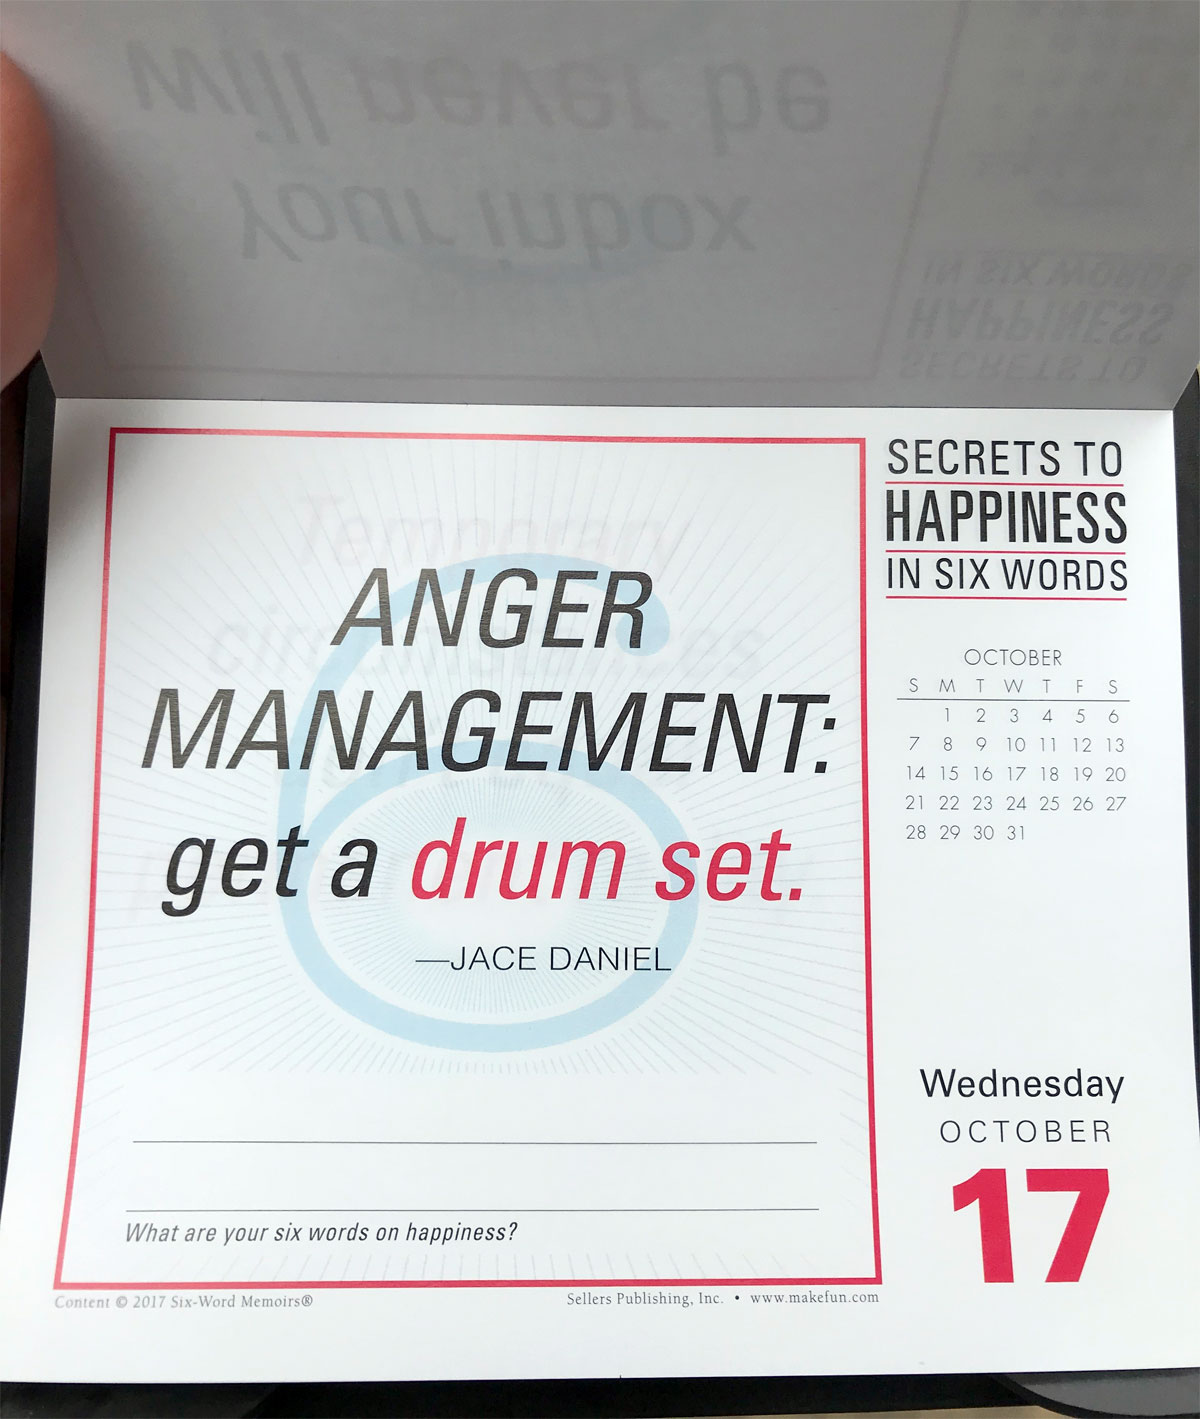 ANGER MANAGEMENT: Get a drum set